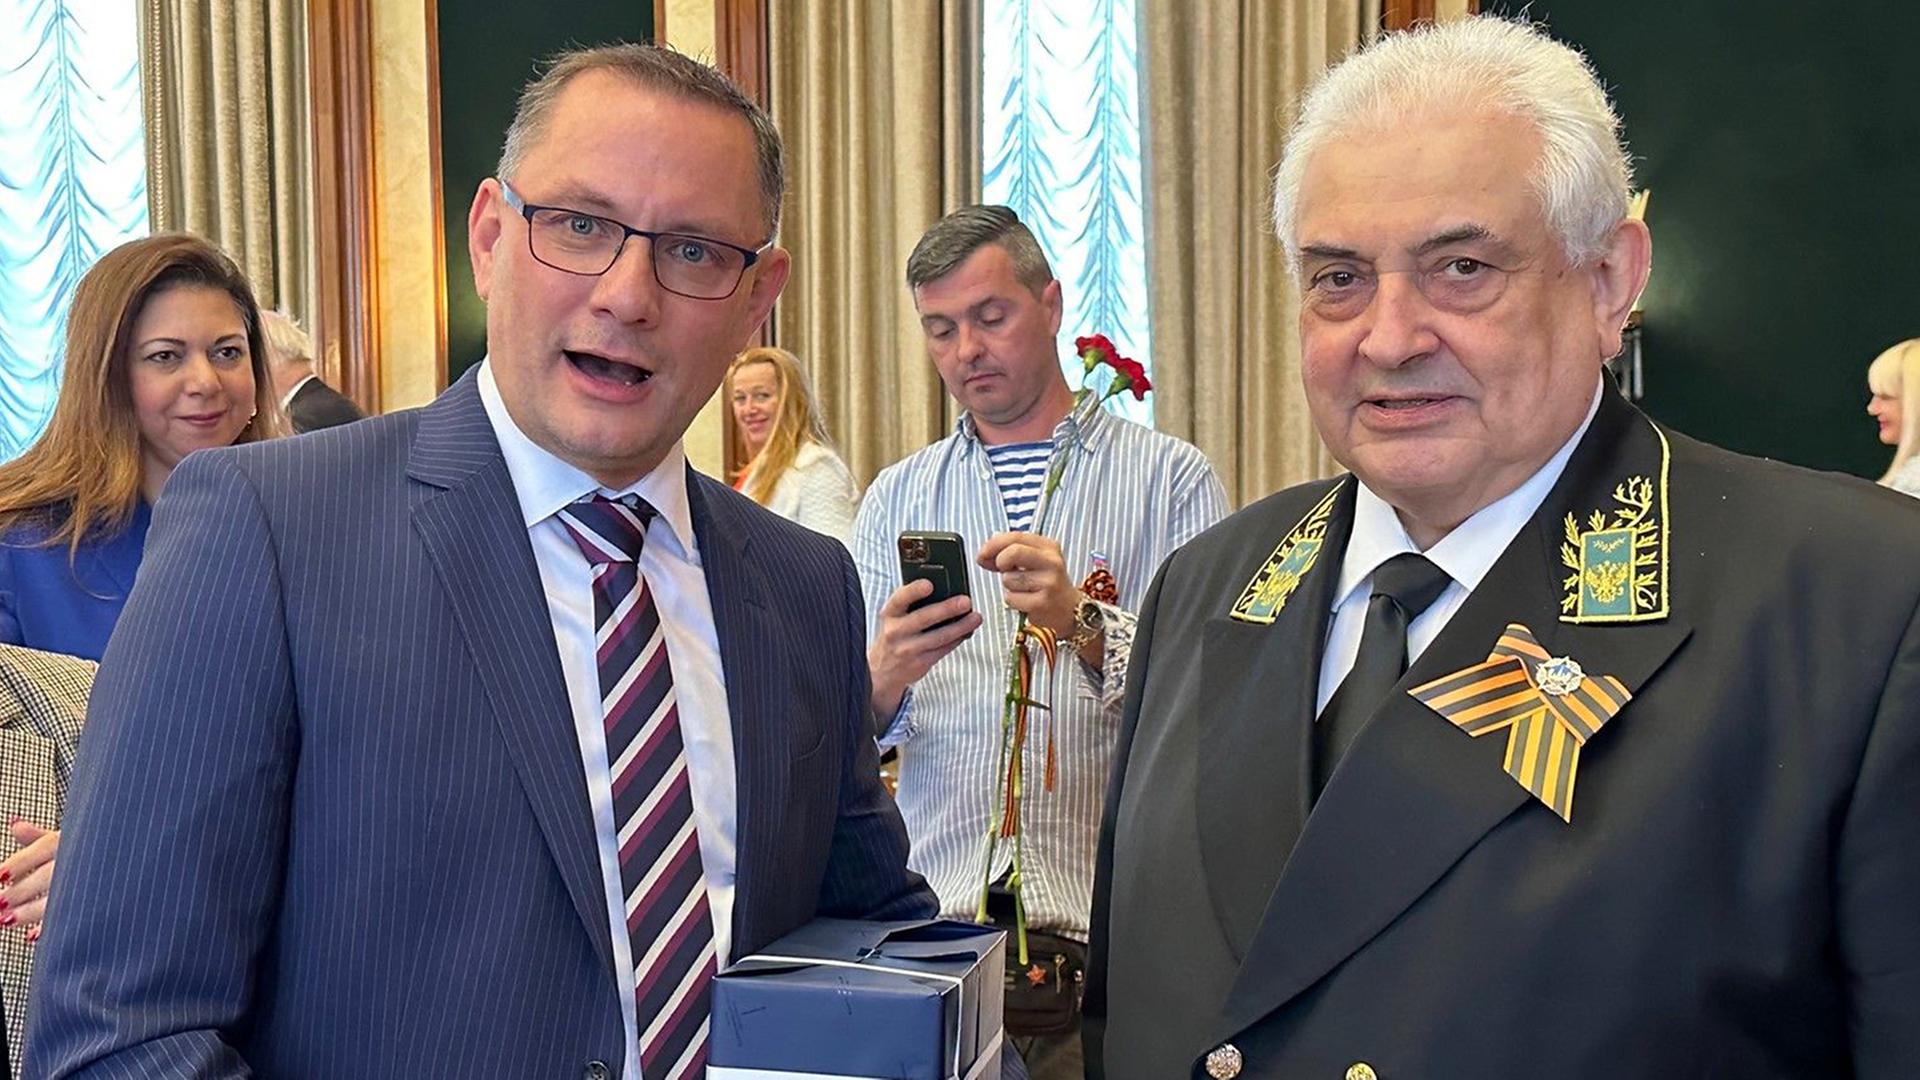 Der AfD-Vorsitzende Tino Chrupalla überreicht dem russischen Botschafter in Deutschland, Sergej Netschajew, ein Geschenk (undatierte Aufnahme)